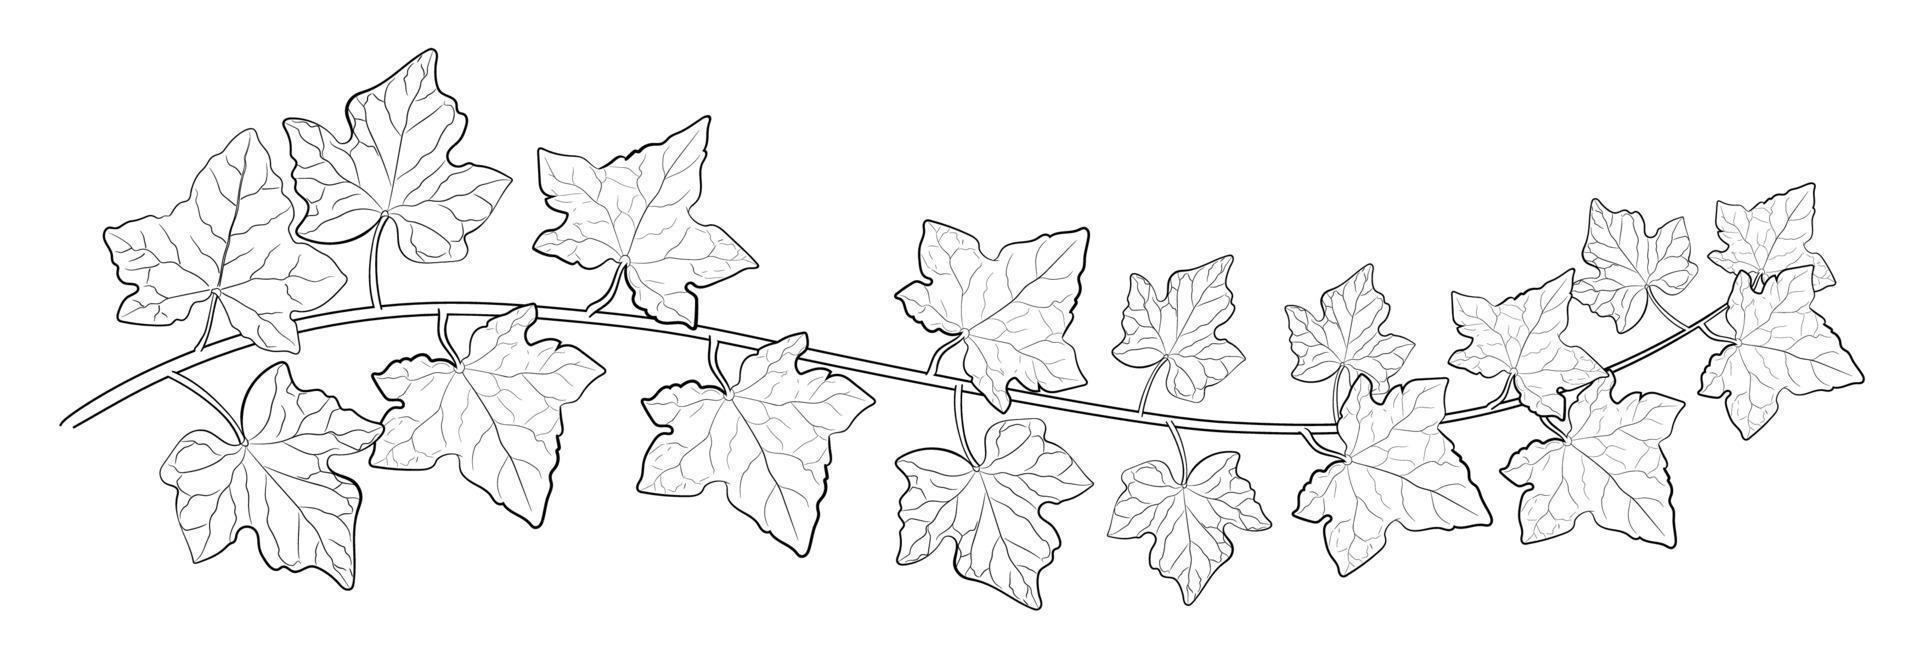 tekening van klimopbladeren. vector